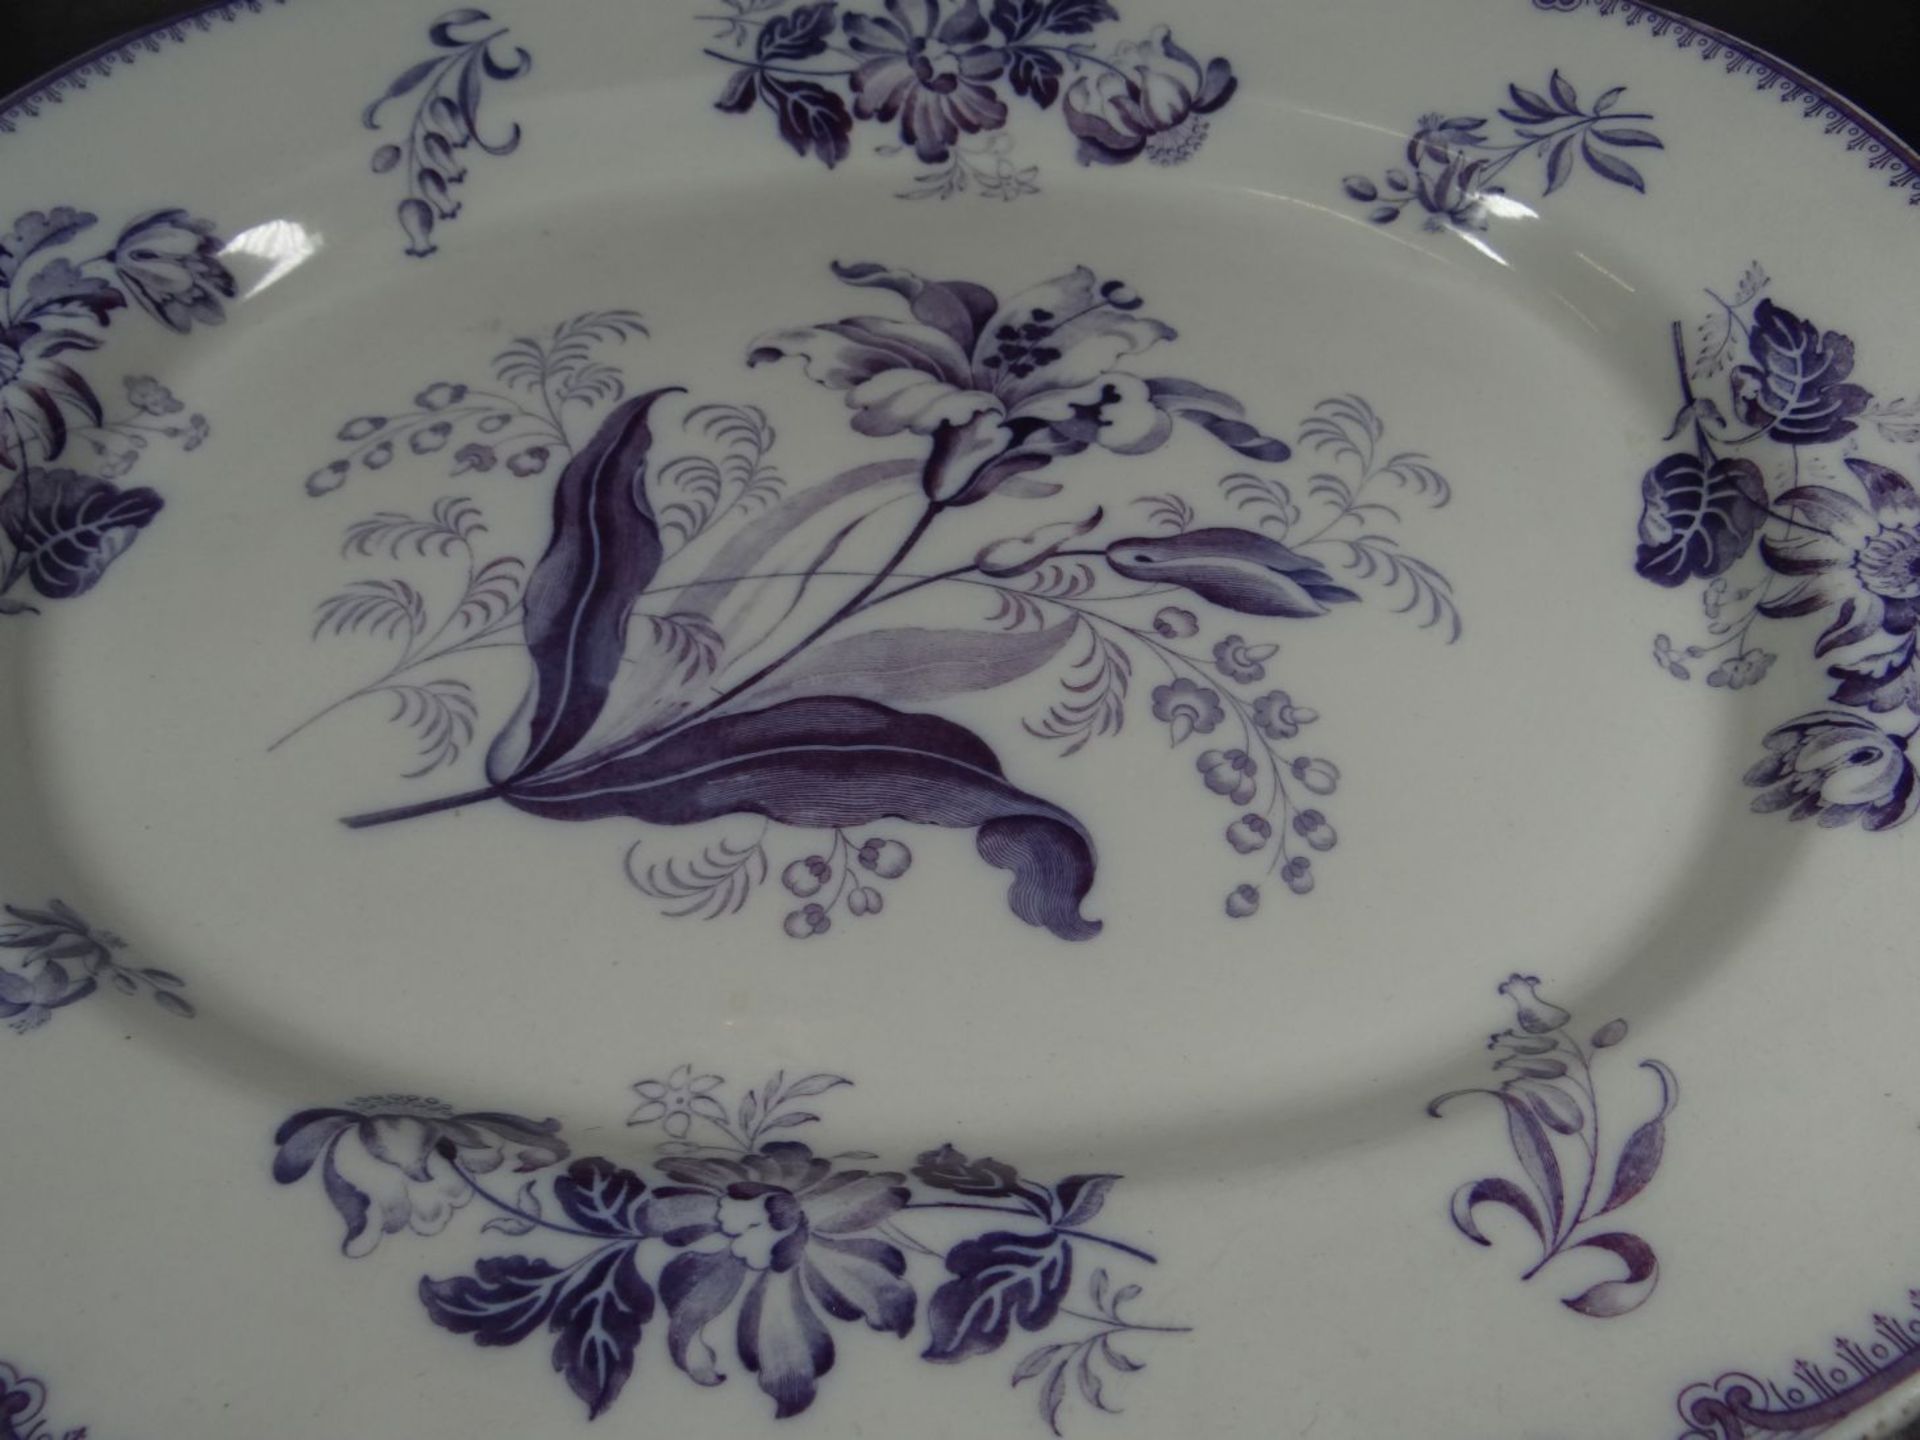 grosse ovale Platte (Gänsebräter) mit floralen Dekor um 1870, 47x39- - -22.61 % buyer's premium on - Bild 3 aus 6